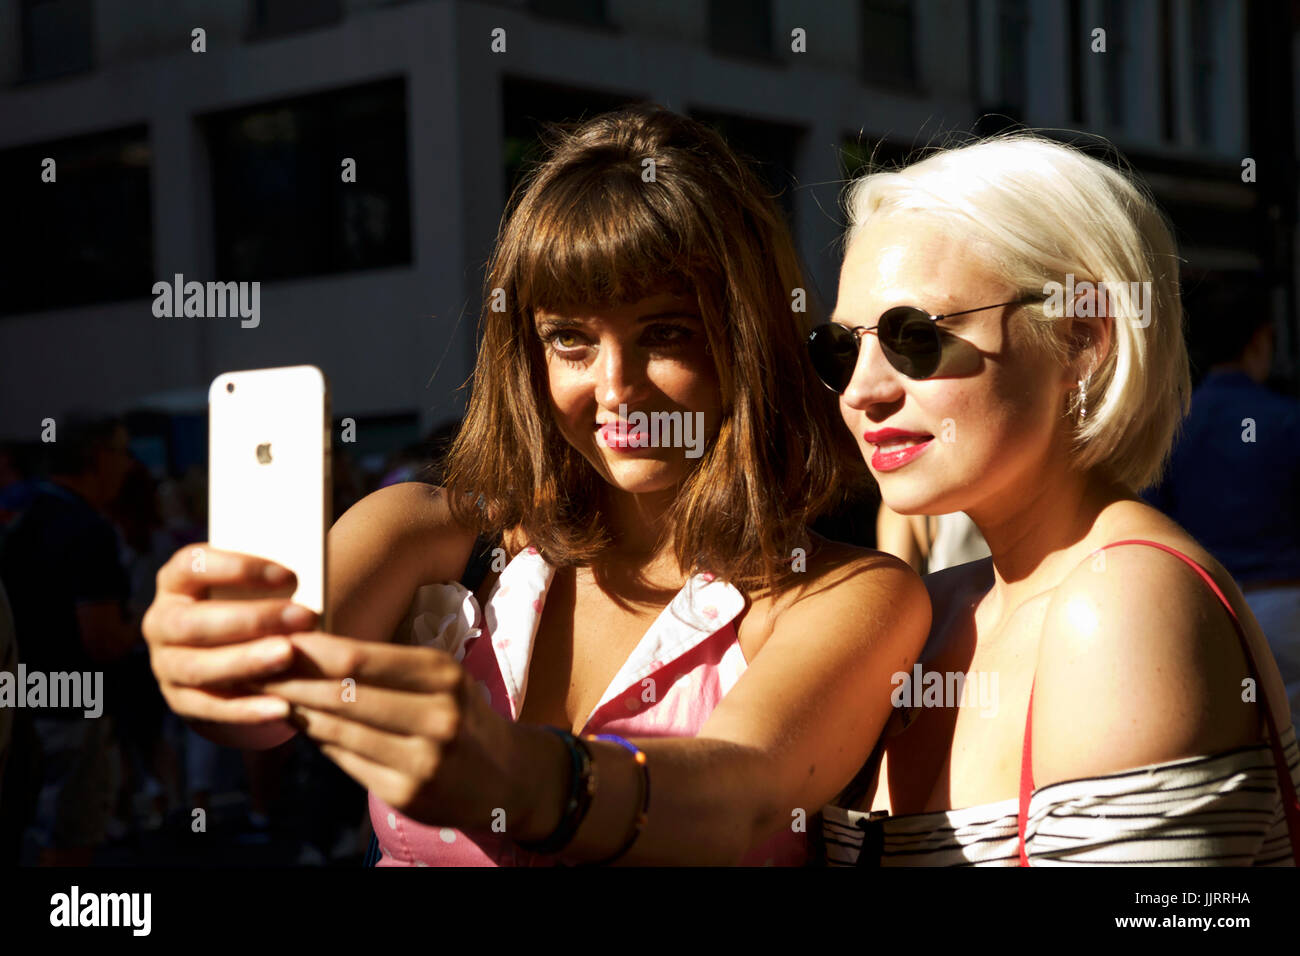 Selfie Smartphone, dos mujeres jóvenes en vintage de moda de verano tomar un autorretrato, Soho London REINO UNIDO Londres moda retro. La cámara del smartphone millenials Foto de stock